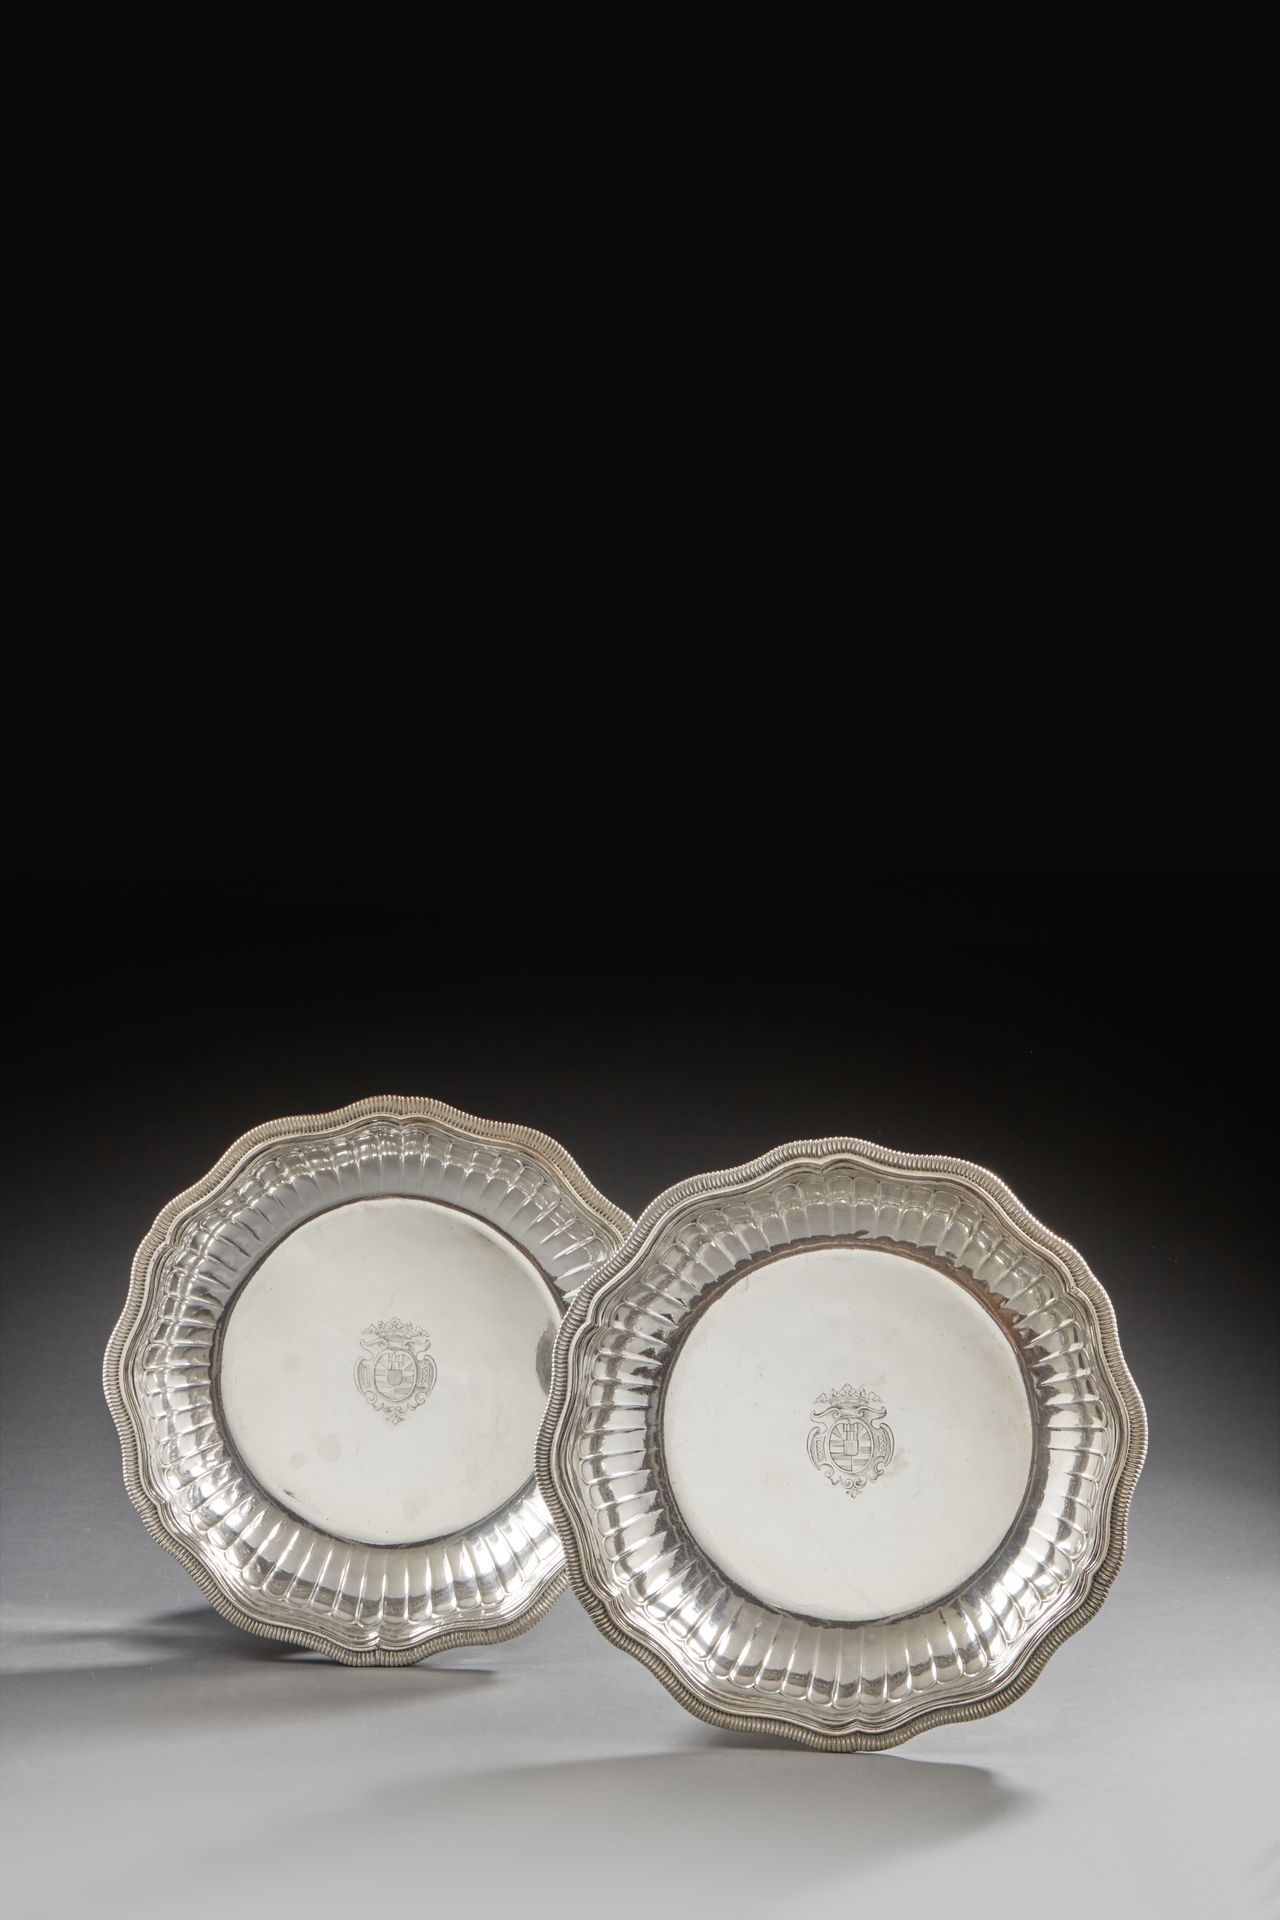 Null 巴黎 1727 - 1728
一对银碗，多裂纹模型，模压有嘎吱嘎吱的声音，碗身浮雕有肋骨。
银器大师：Jacques DEME，1656年或1690年&hellip;